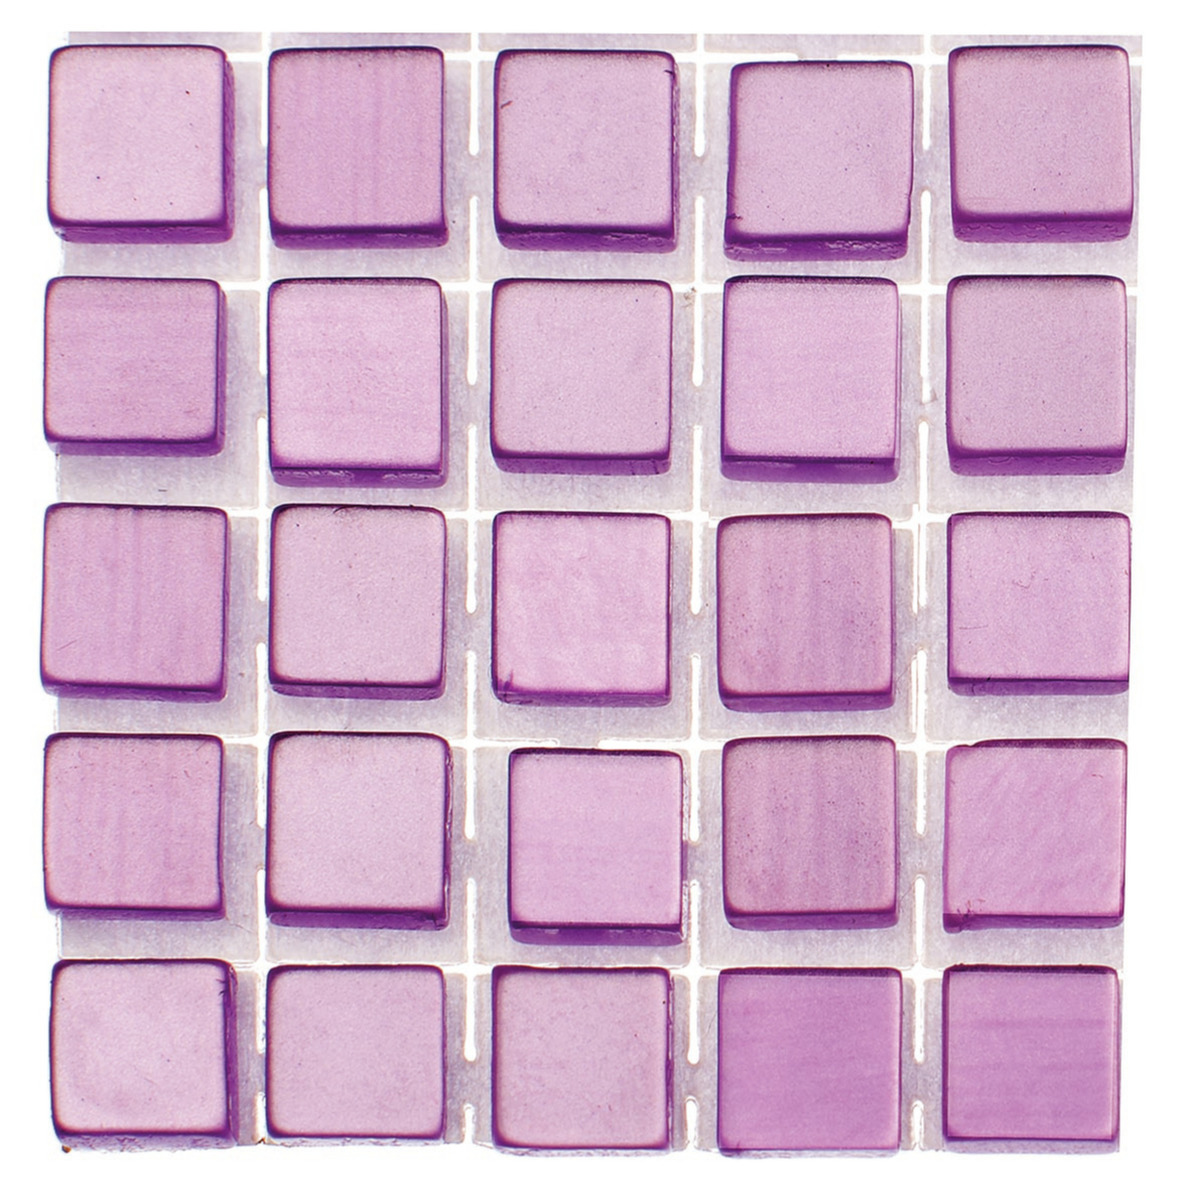 714x stuks mozaieken maken steentjes/tegels kleur lila paars 5 x 5 x 2 mm -